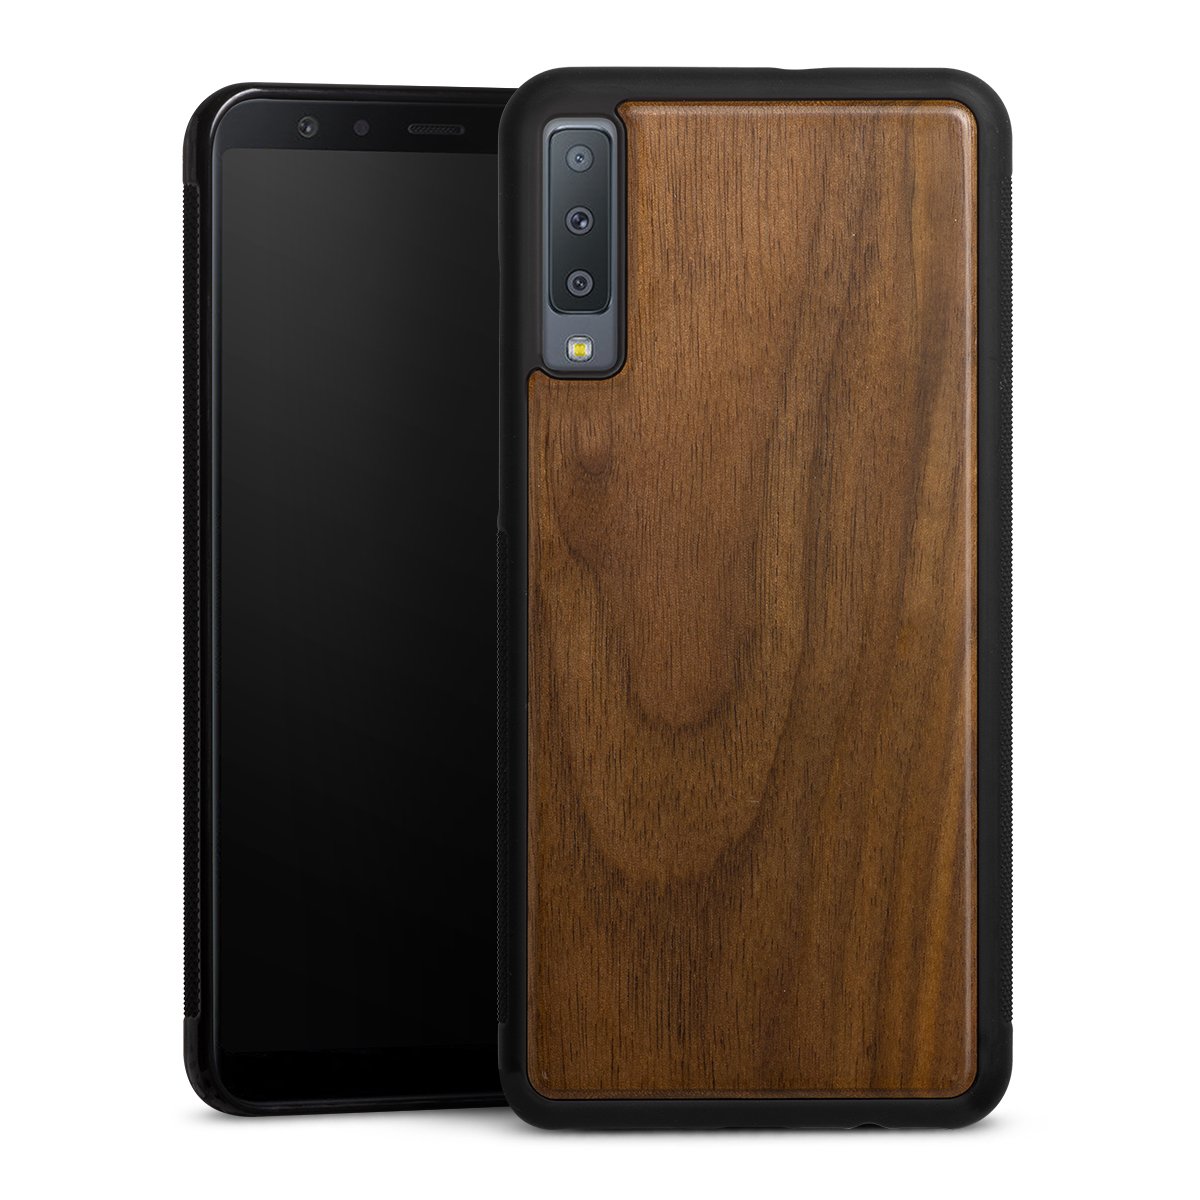 Wooden Hard Case pour Samsung Galaxy A7 Duos (2018)